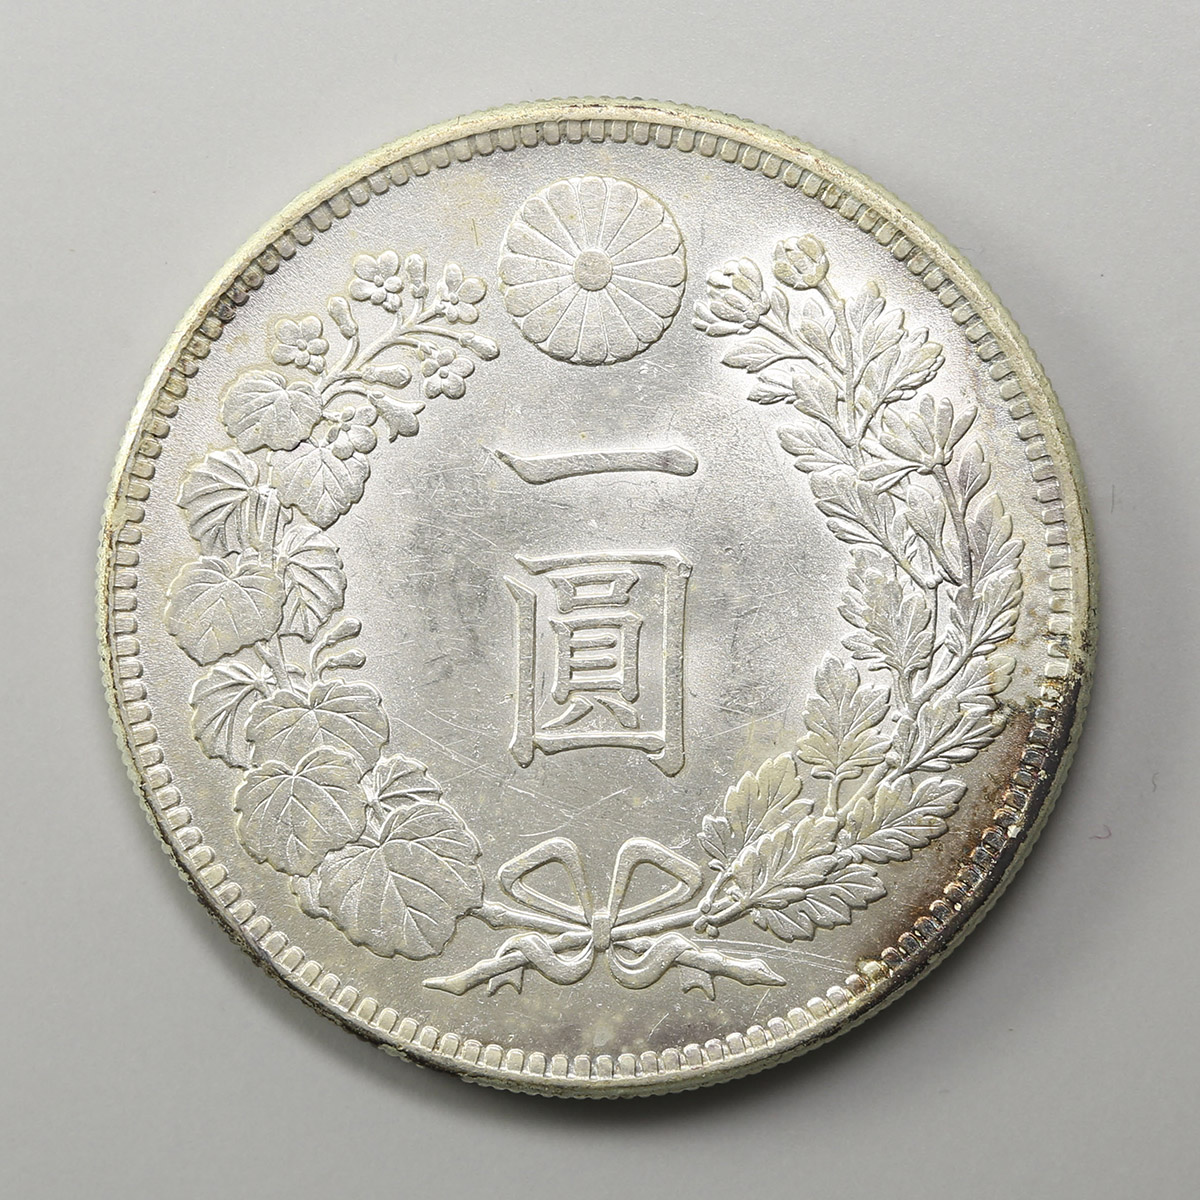 限时竞拍,新1円銀貨(小型) 明治38年(1905)